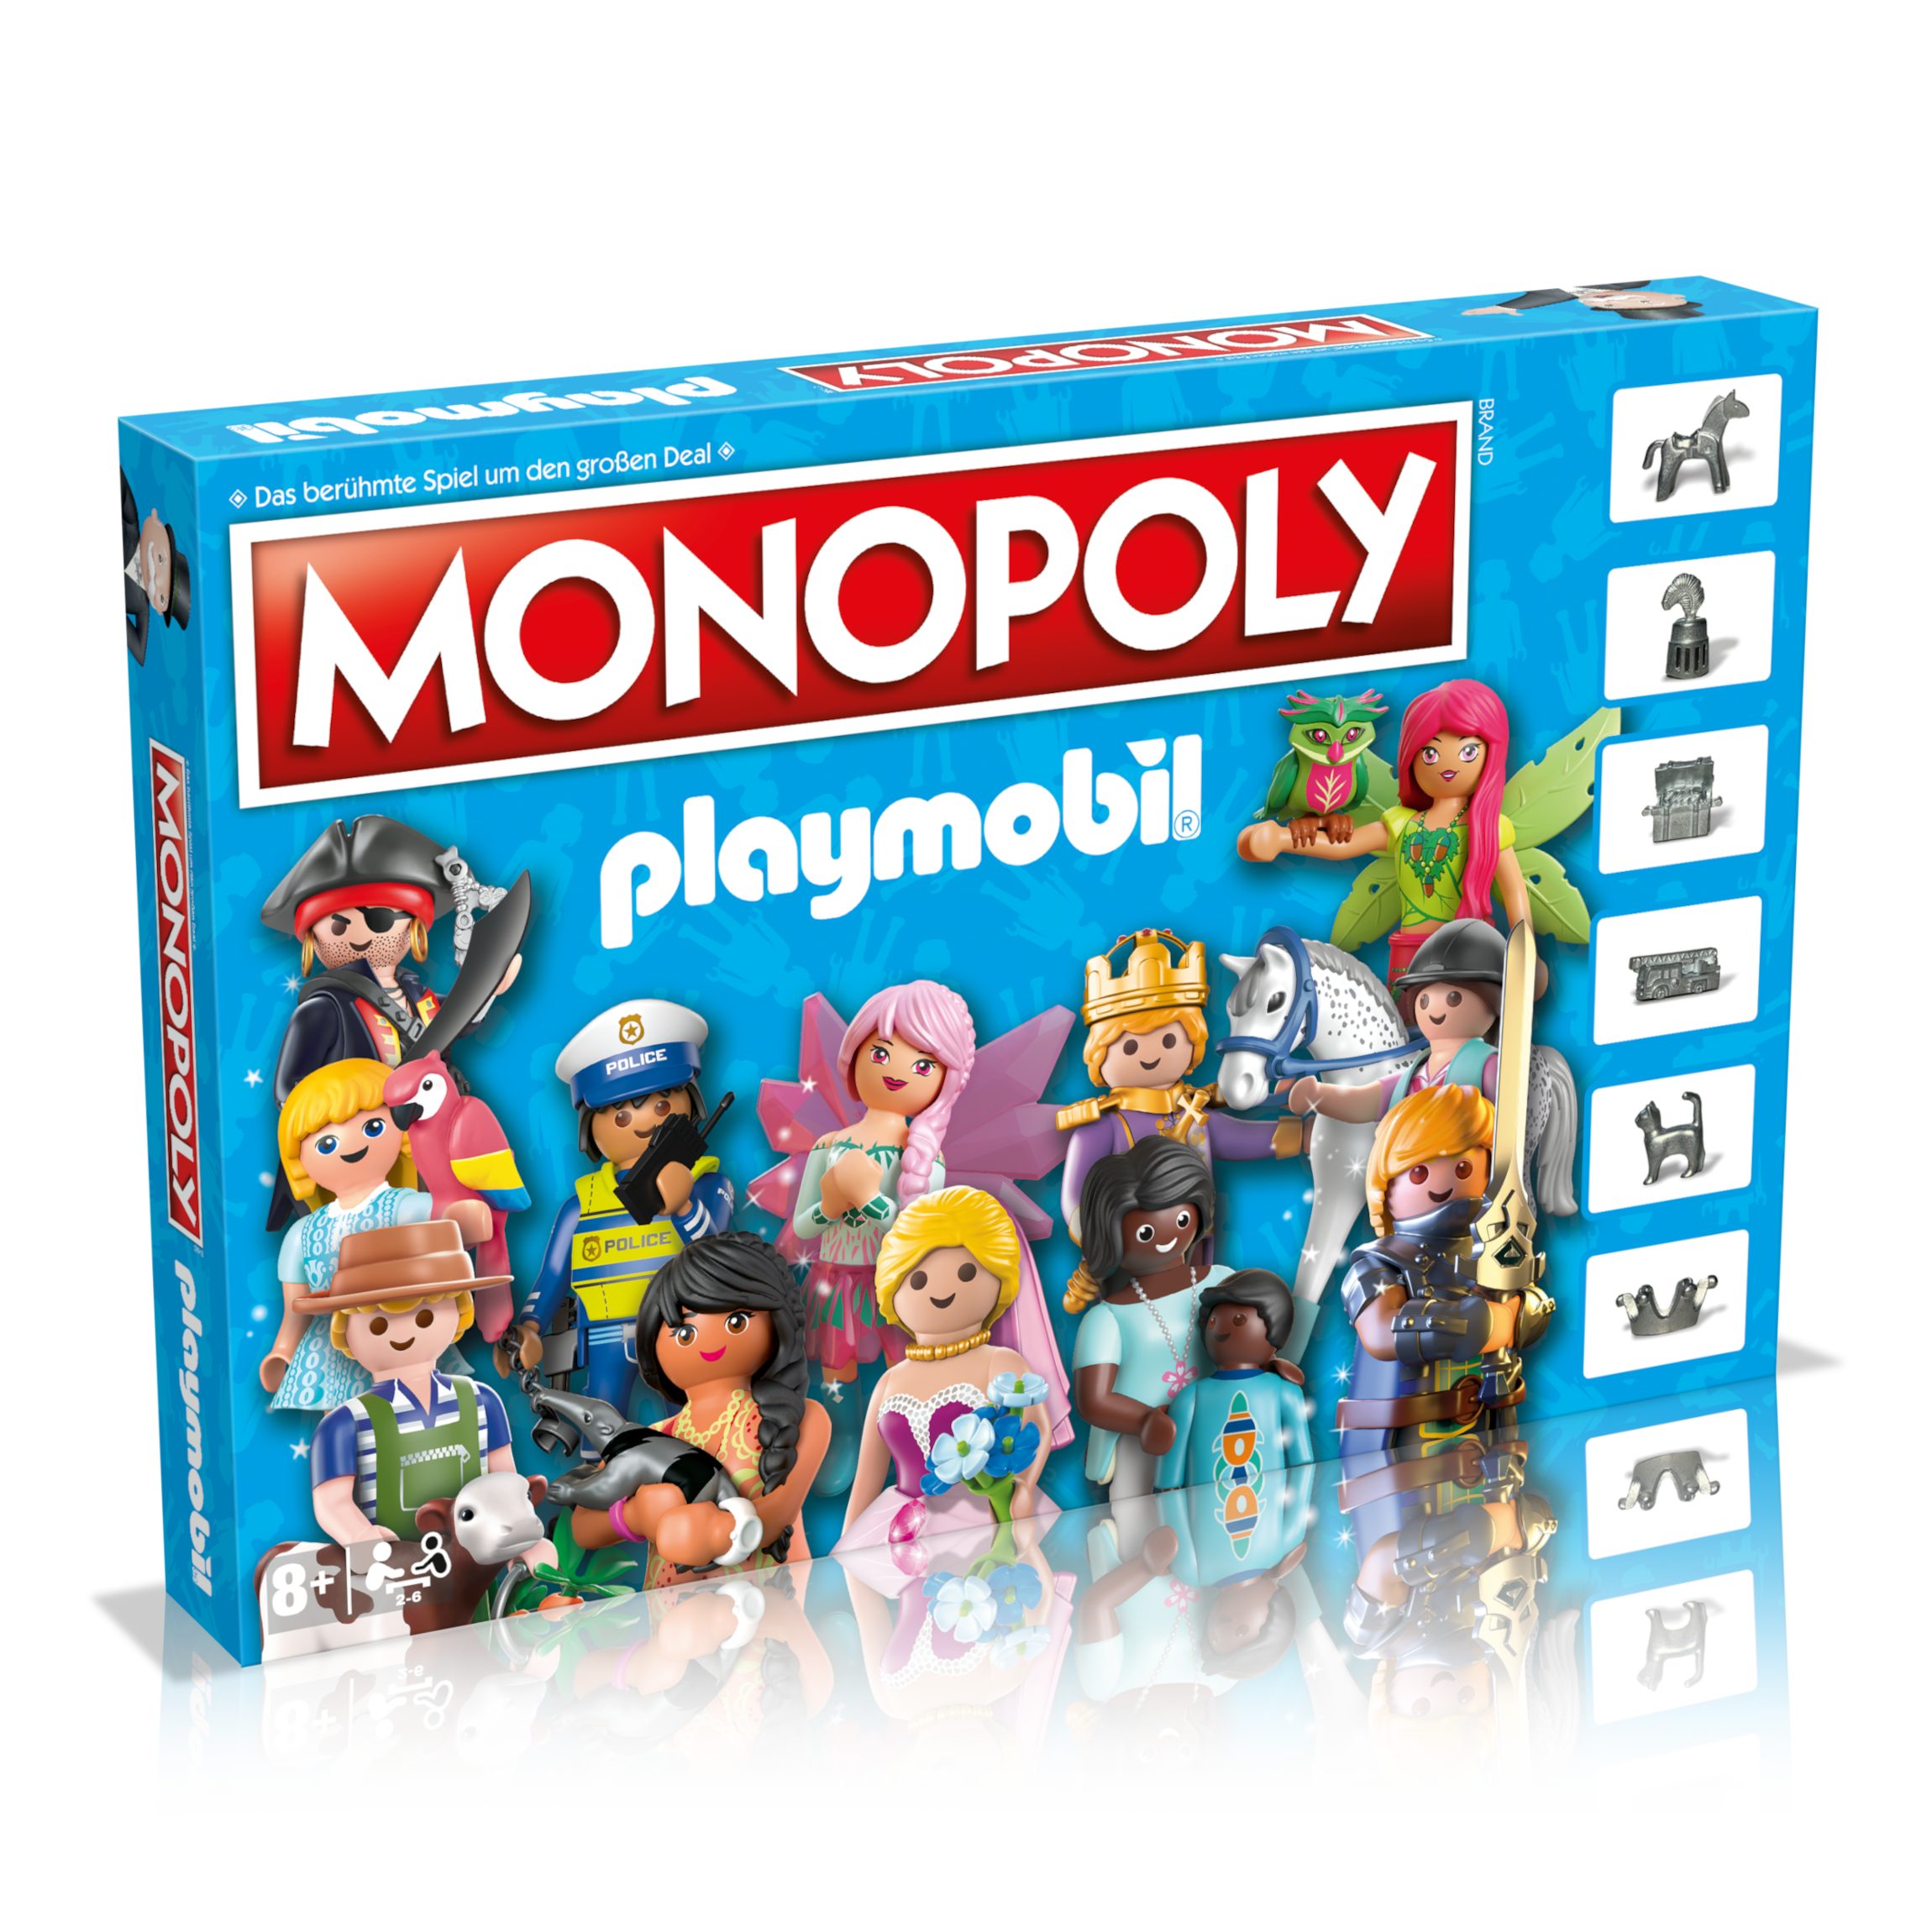 Moves Brettspiel Spiel, Monopoly - Winning Playmobil